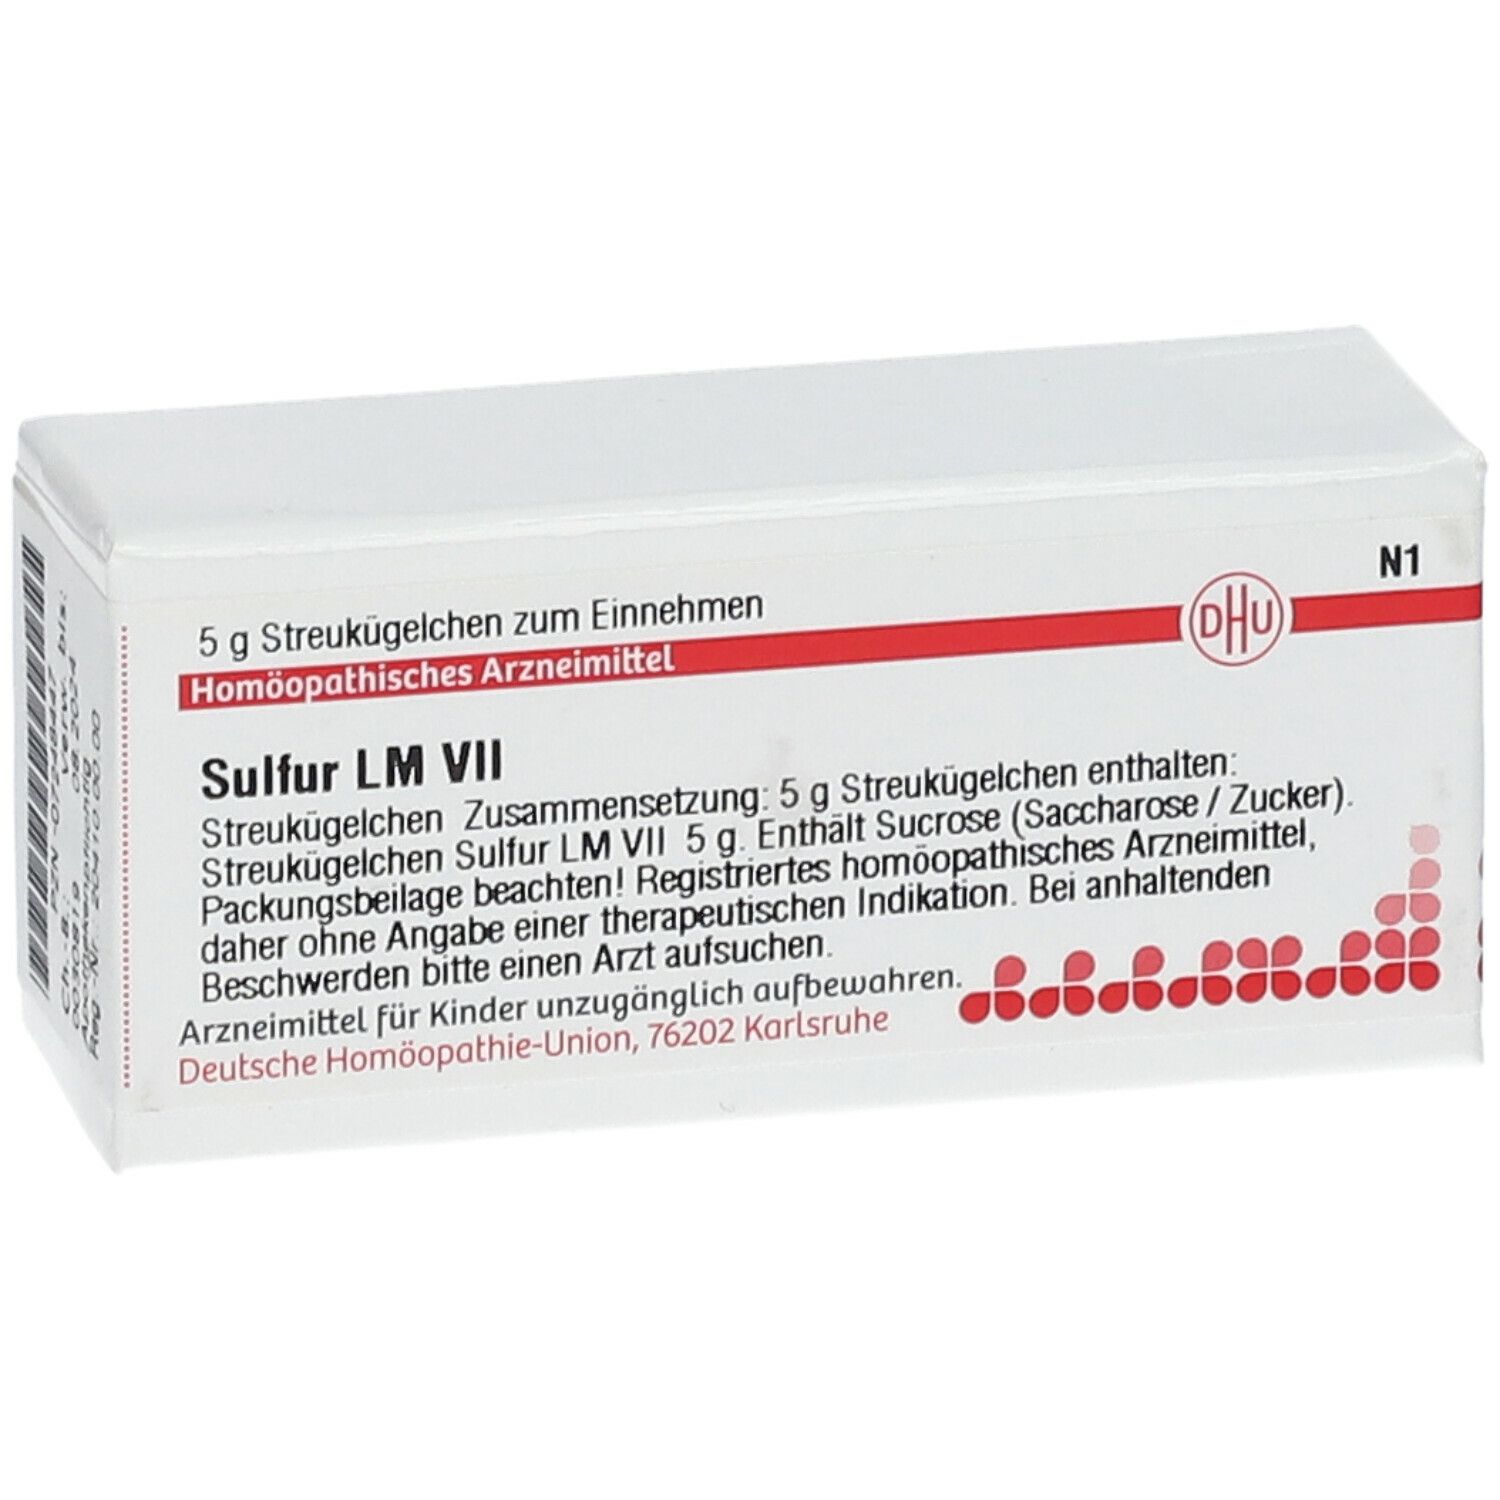 DHU Sulfur LM VII